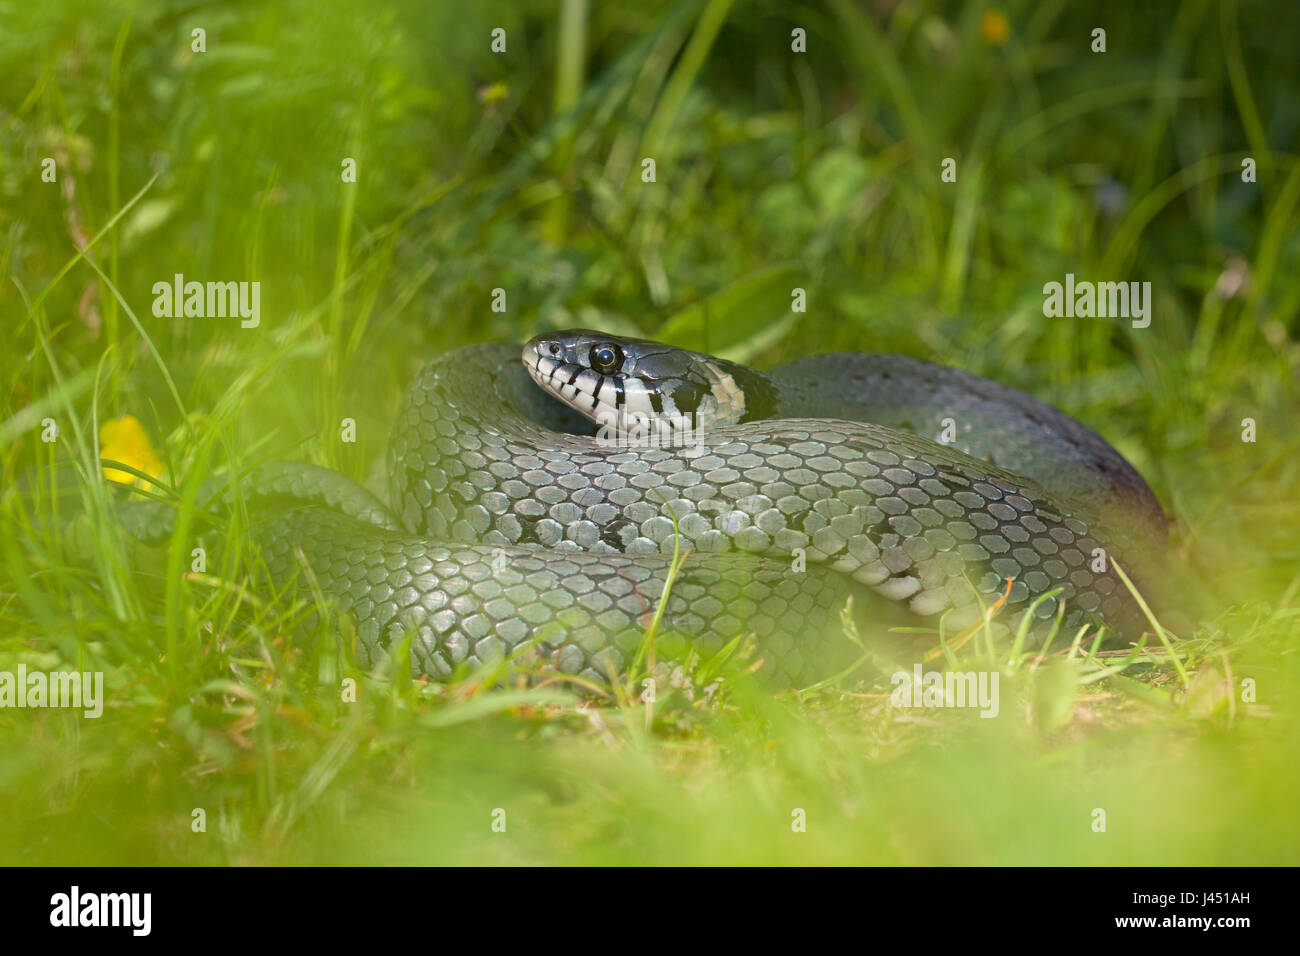 grass snake hidden between the grass Stock Photo